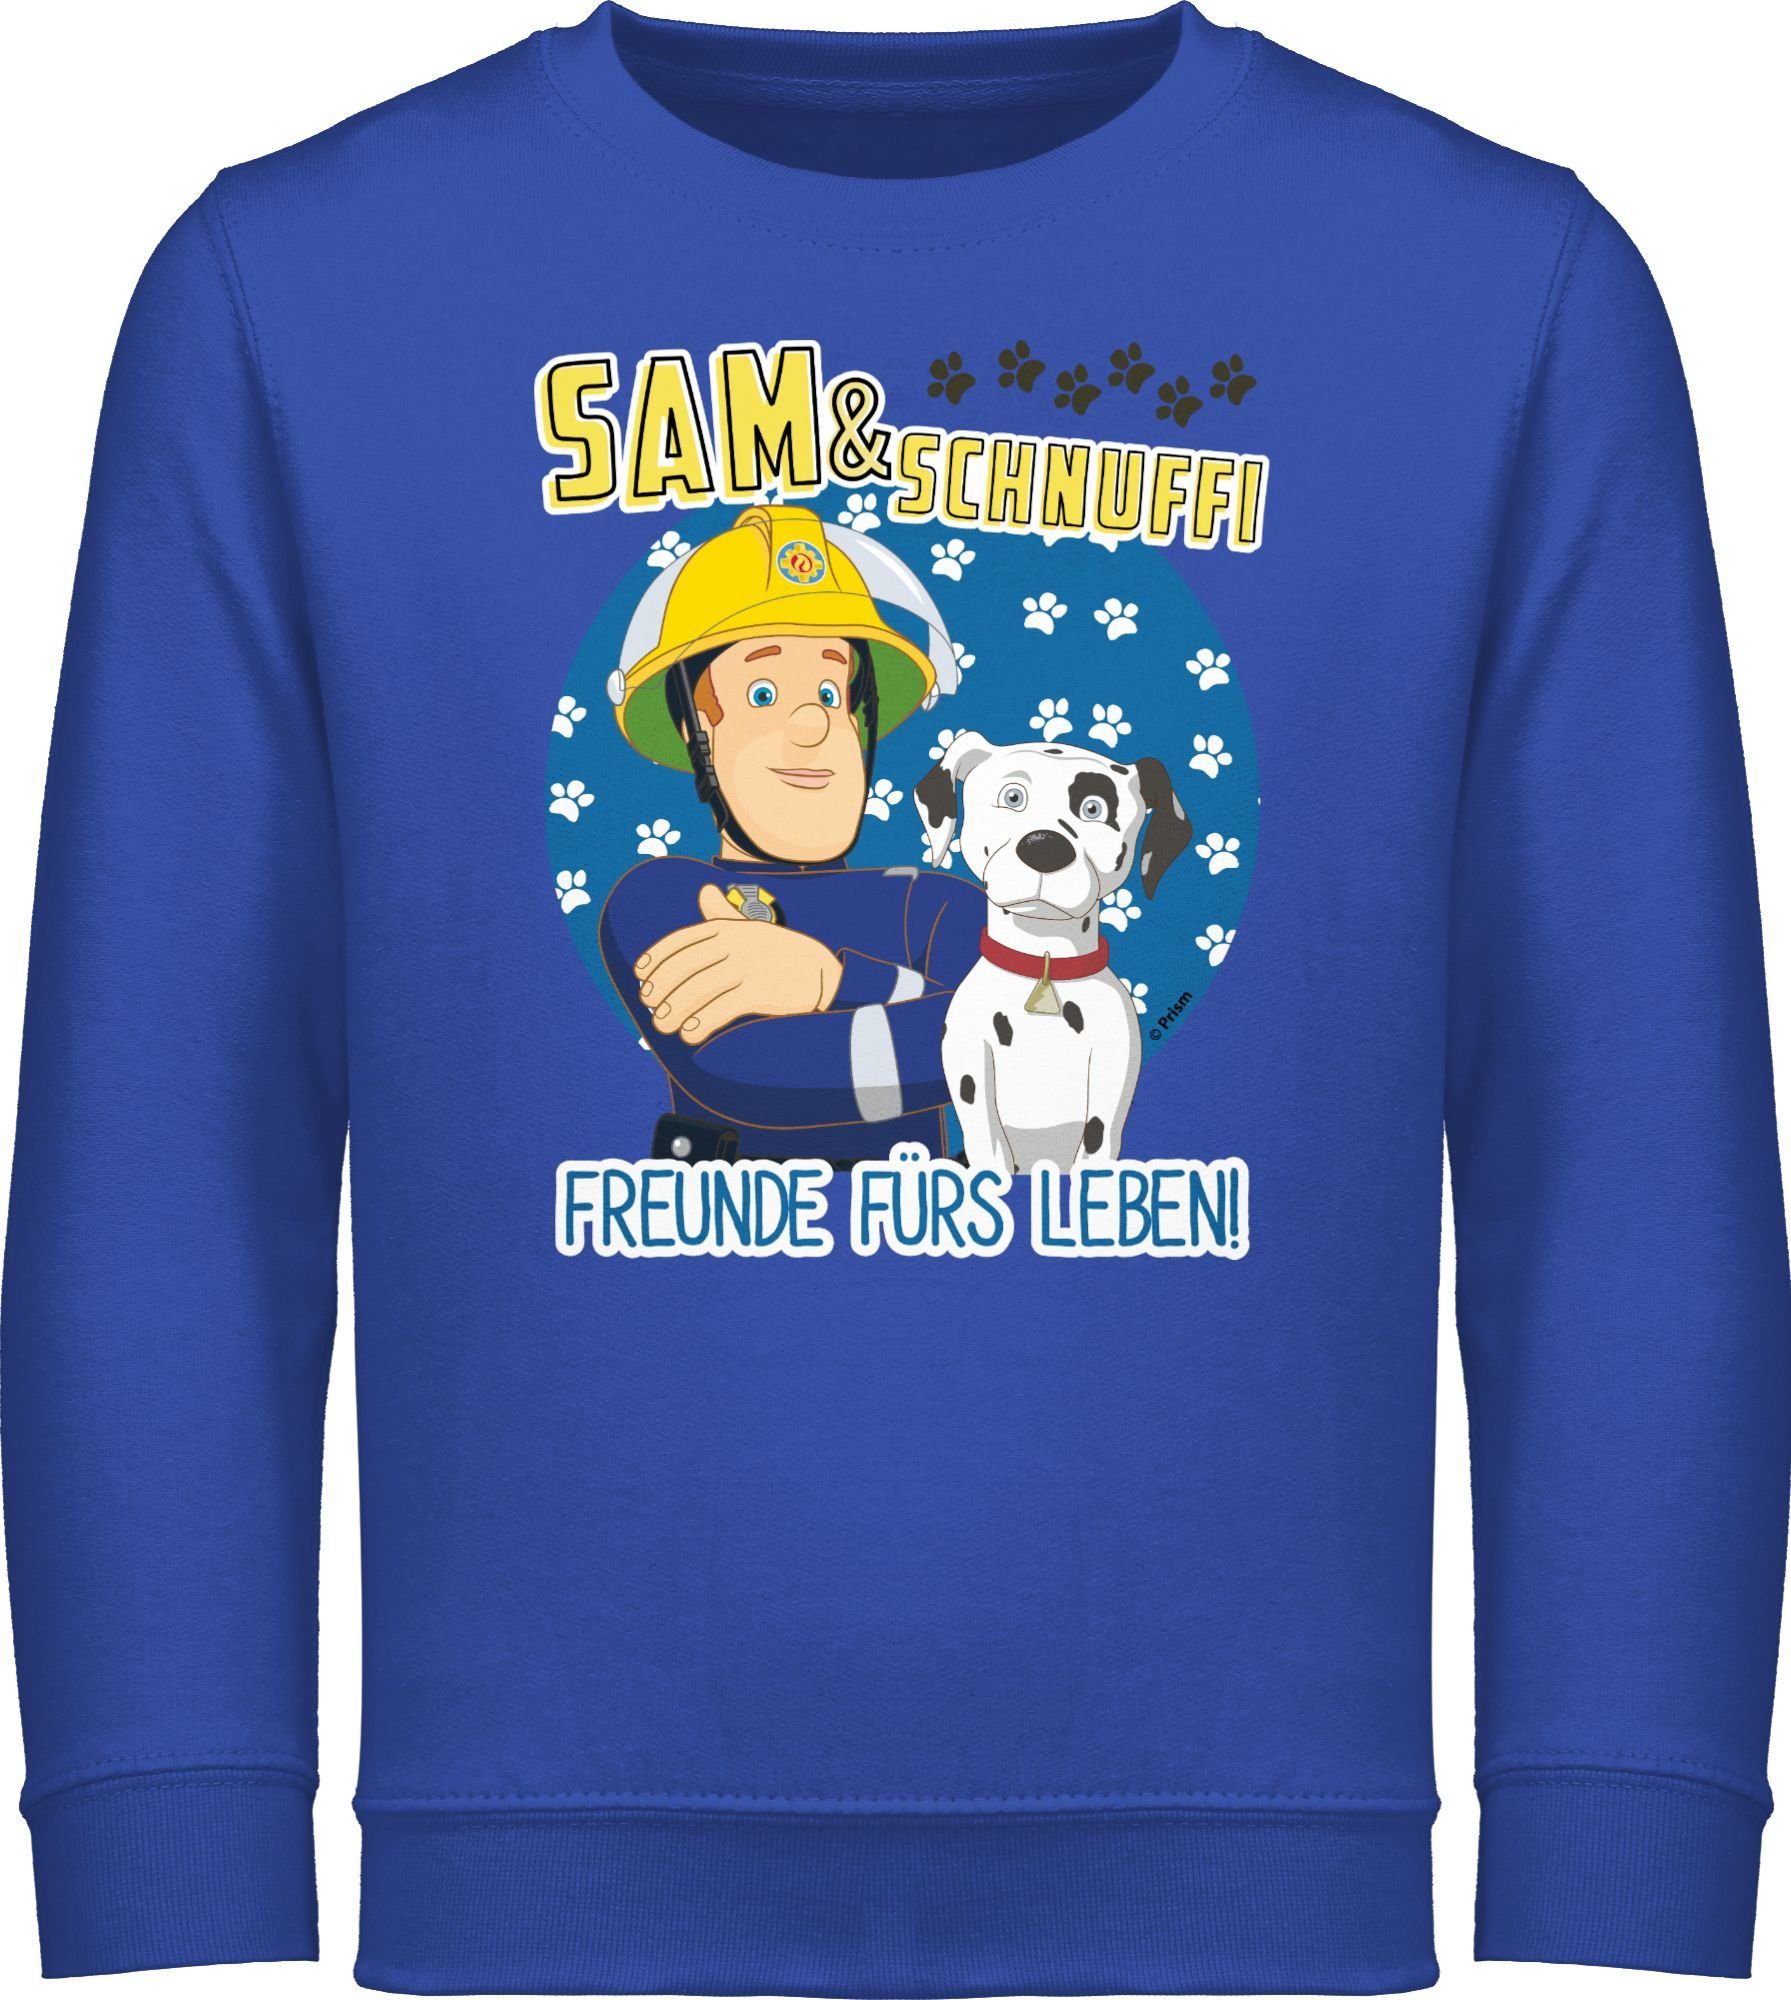 Feuerwehrmann Sweatshirt Schnuffi 1 - Royalblau Sam Freunde fürs Shirtracer & Mädchen Leben Sam